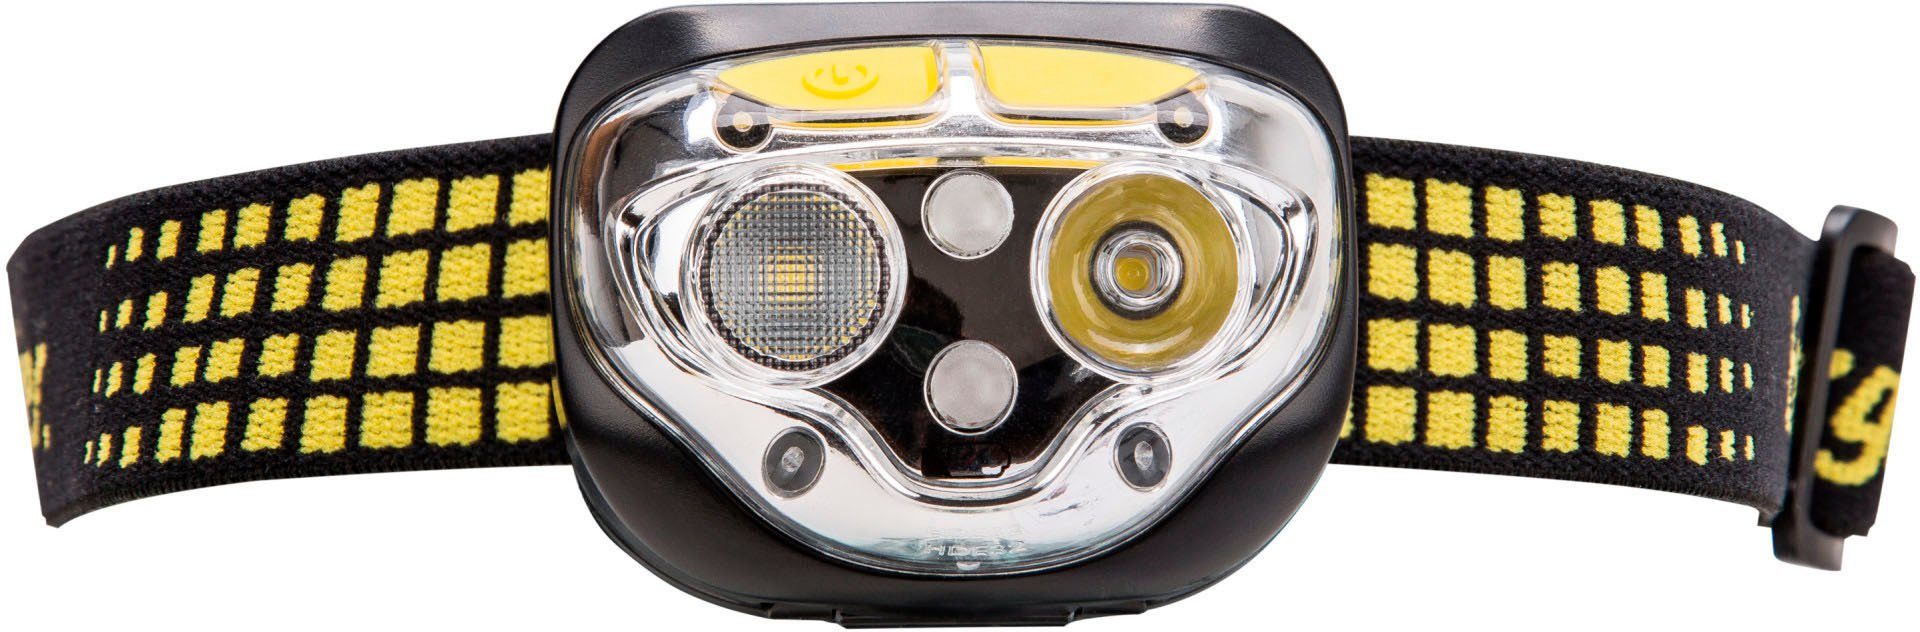 Energizer LED Stirnlampe Vision Ultra 450 Lumen | Stirnlampen